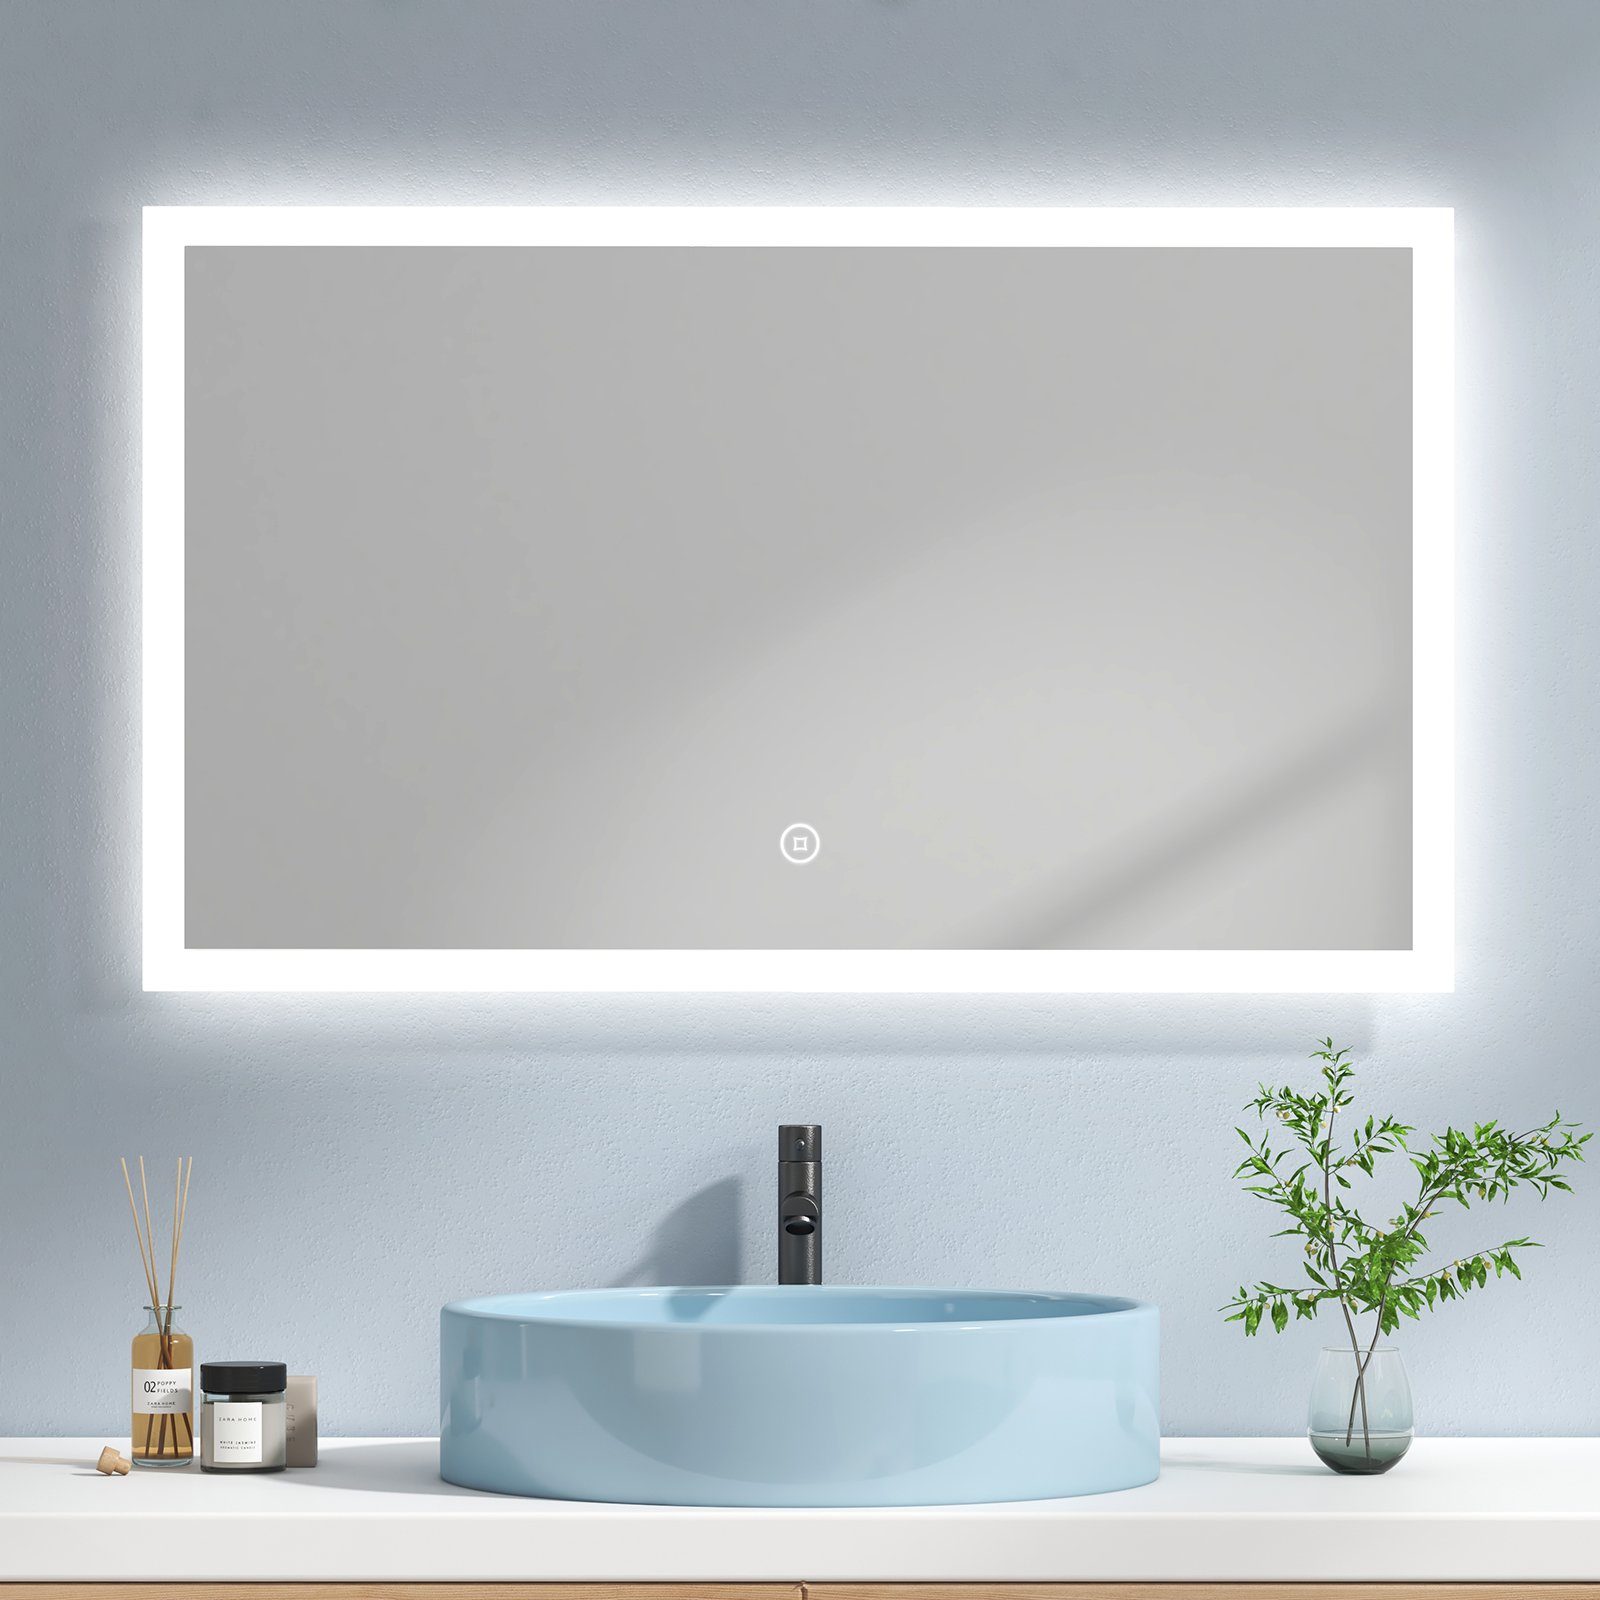 EMKE Badspiegel EMKE LED Badspiegel 100x60cm Badezimmerspiegel, mit  Warmweiß/Kaltweiß/Natürliches Licht und Touch-schalter